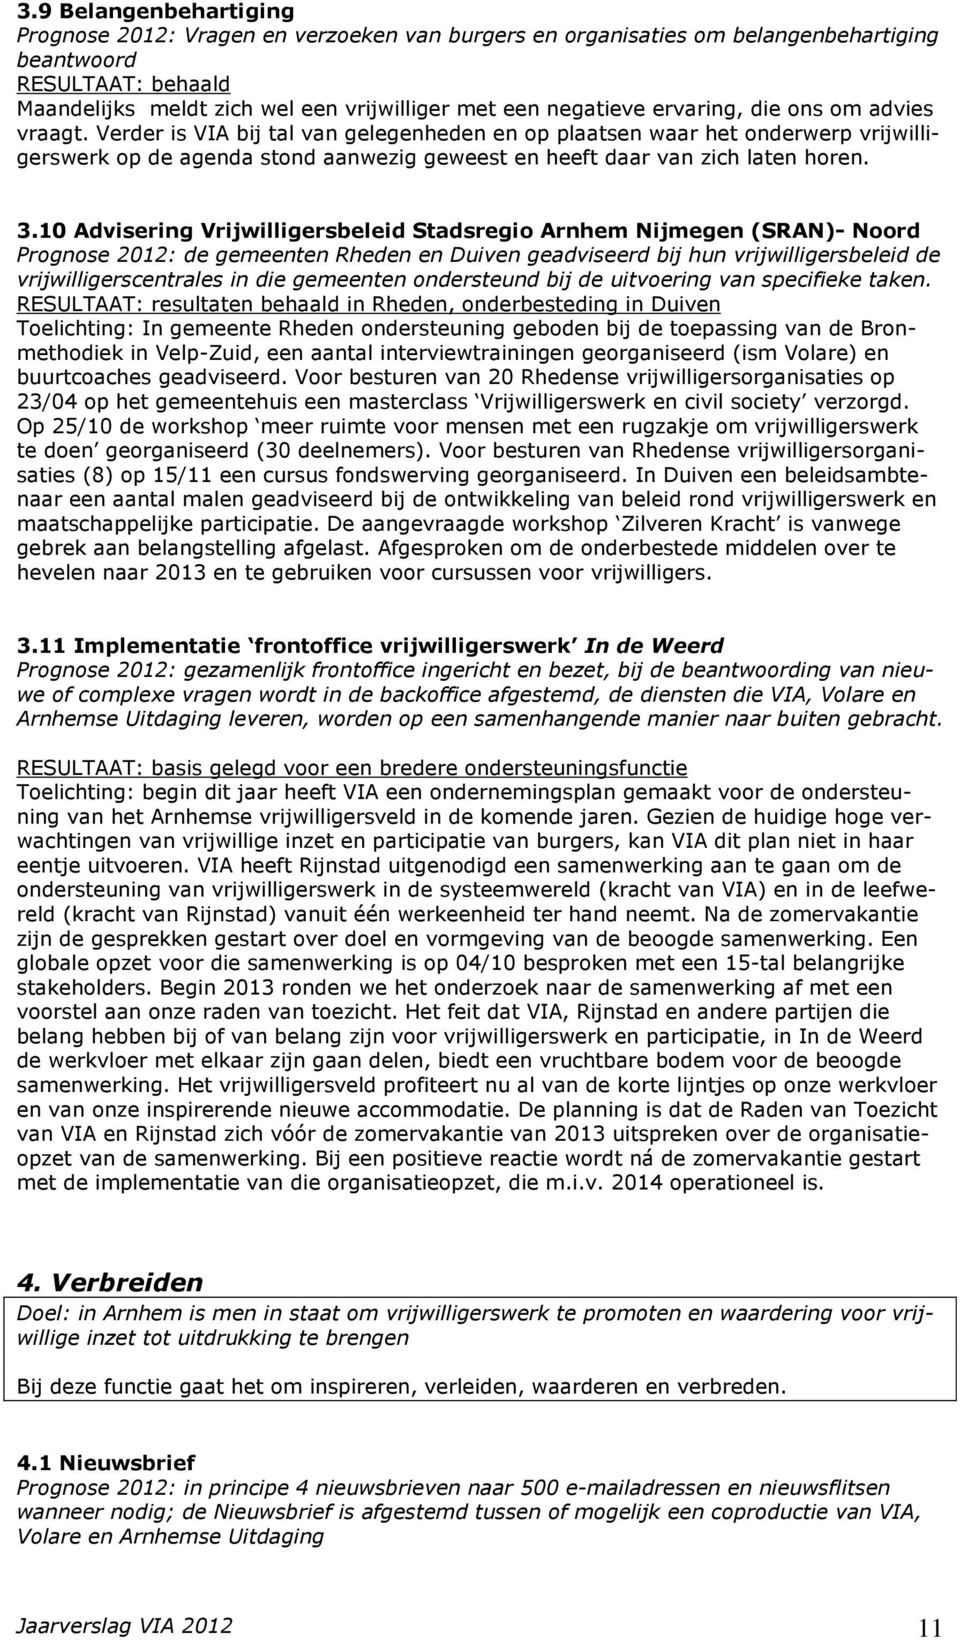 10 Advisering Vrijwilligersbeleid Stadsregio Arnhem Nijmegen (SRAN)- Noord Prognose 2012: de gemeenten Rheden en Duiven geadviseerd bij hun vrijwilligersbeleid de vrijwilligerscentrales in die